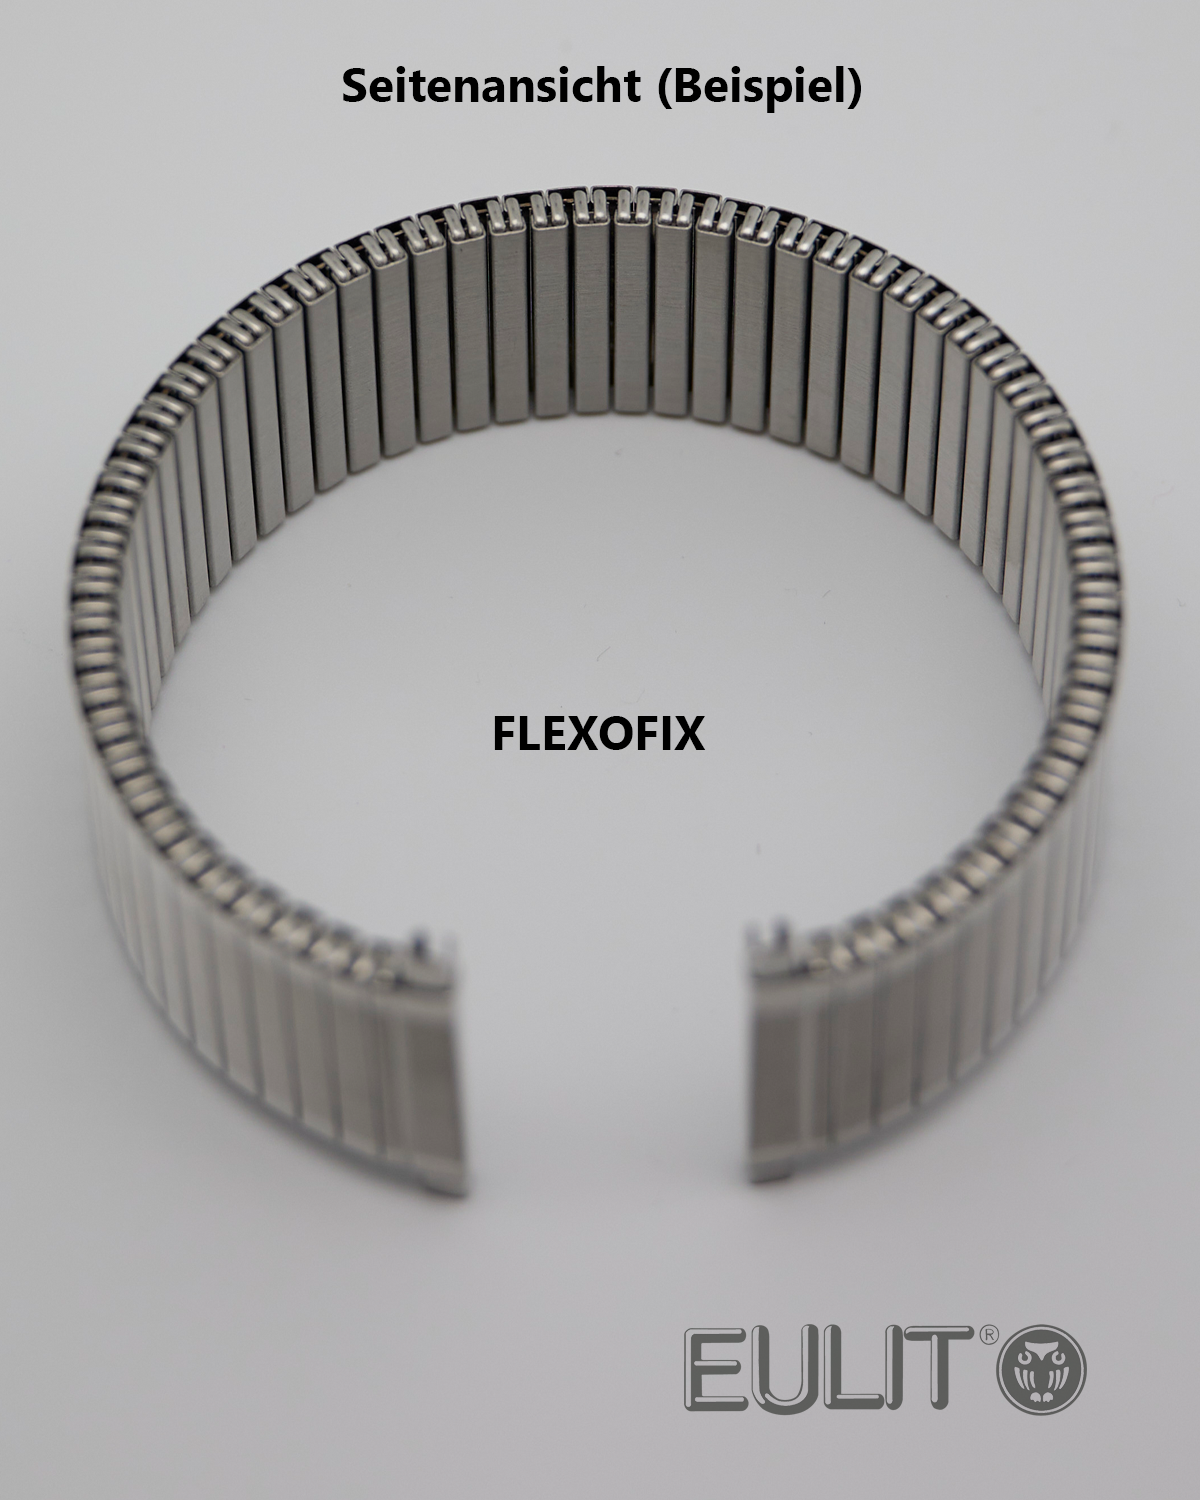 76-410161 EULIT FLEXOFIX 16-18 mm Edelstahl